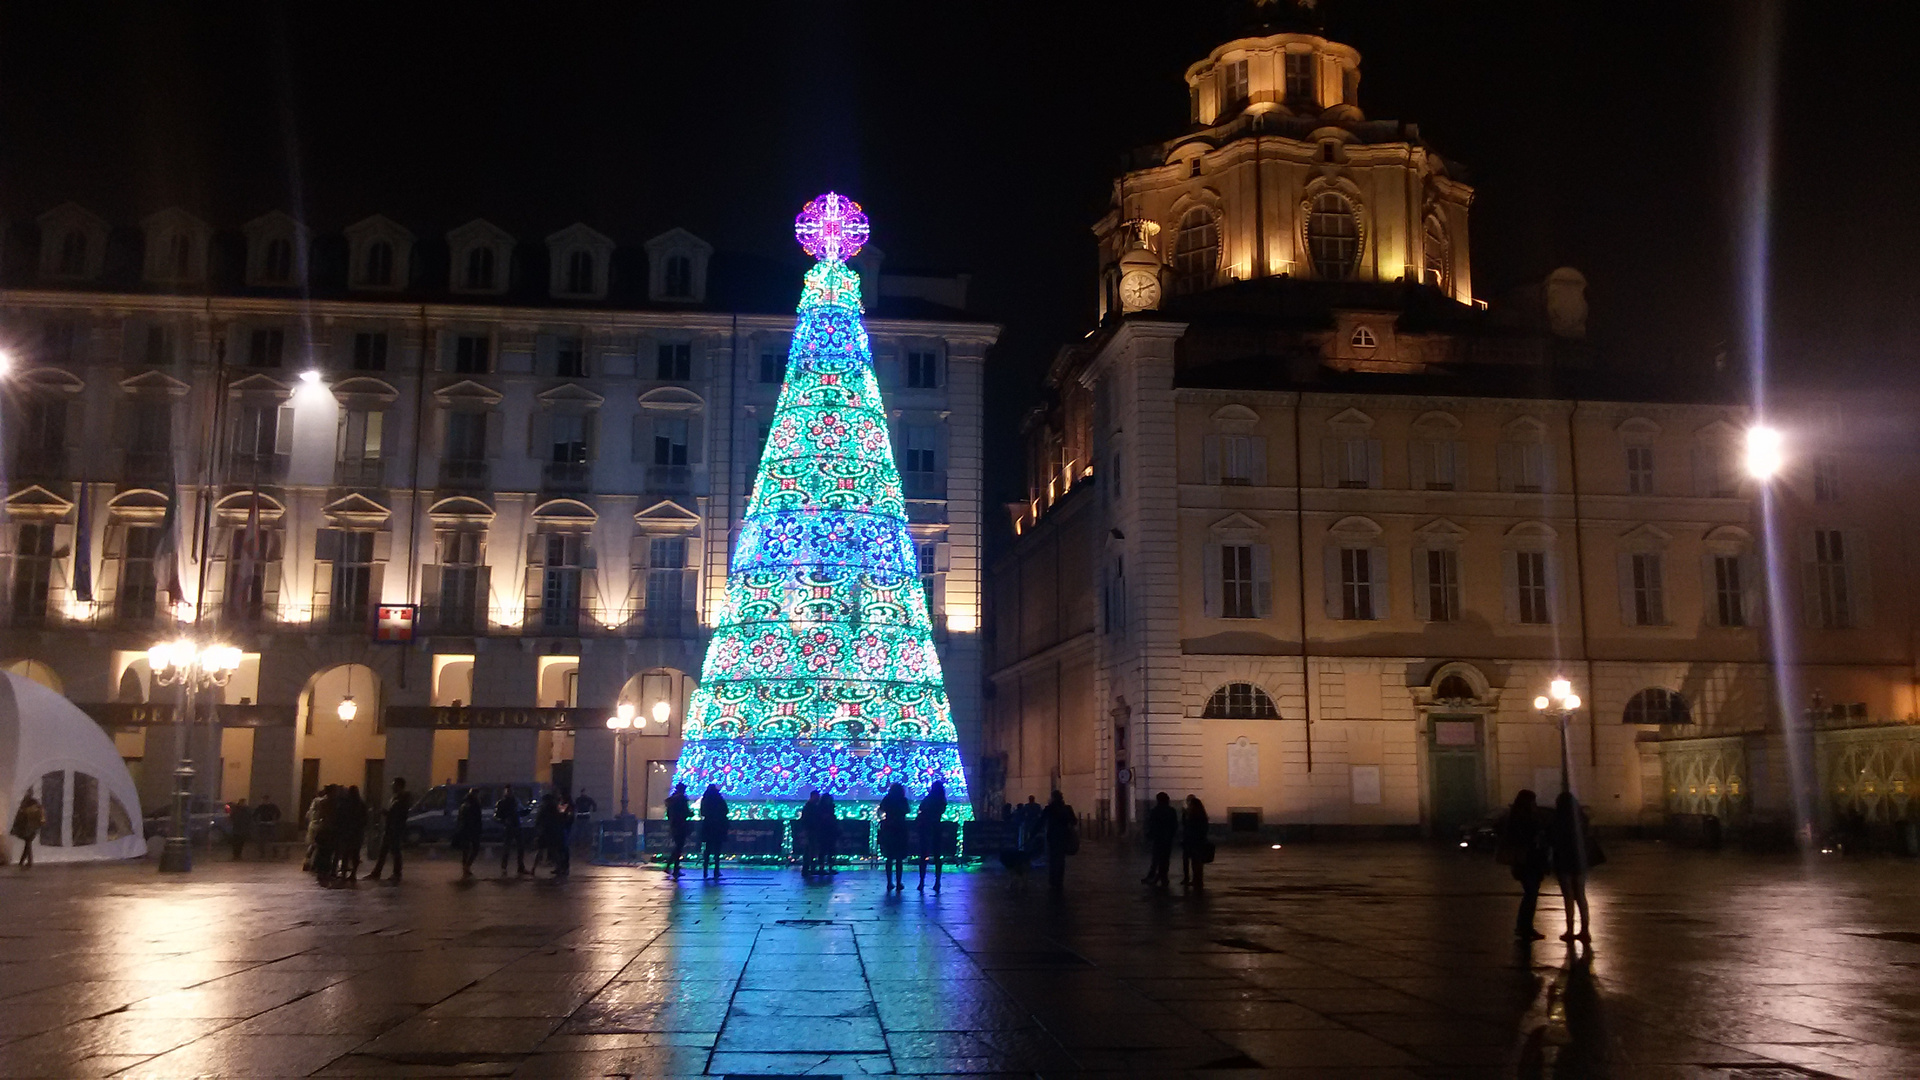 Luci a Torino 2014: Piazza Castello